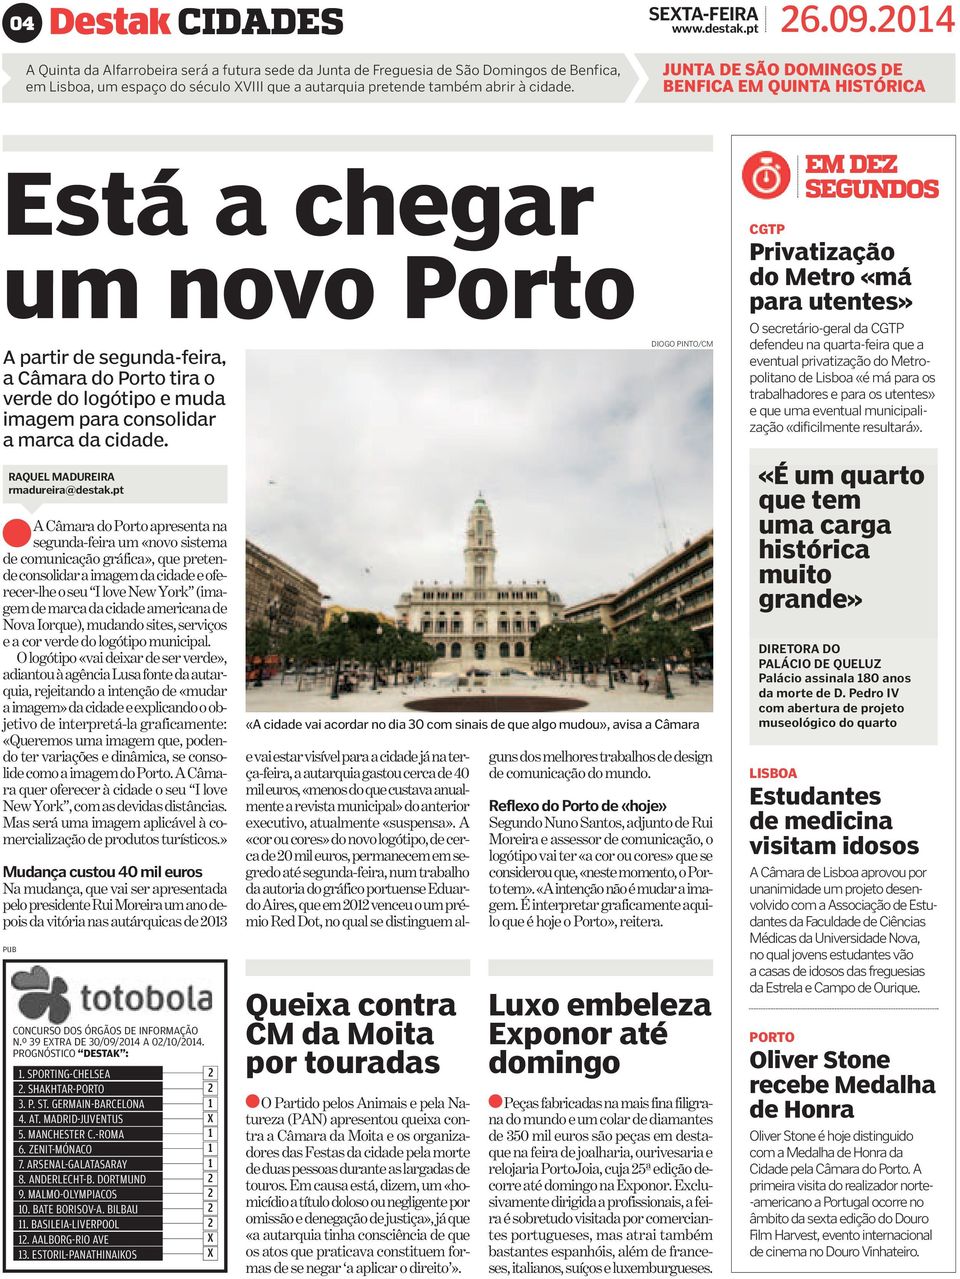 JUNTA DE SÃO DOMINGOS DE BENFICA EM QUINTA HISTÓRICA Está a chegar um novo Porto A partir de segunda-feira, a Câmara do Porto tira o verde do logótipo e muda imagem para consolidar a marca da cidade.